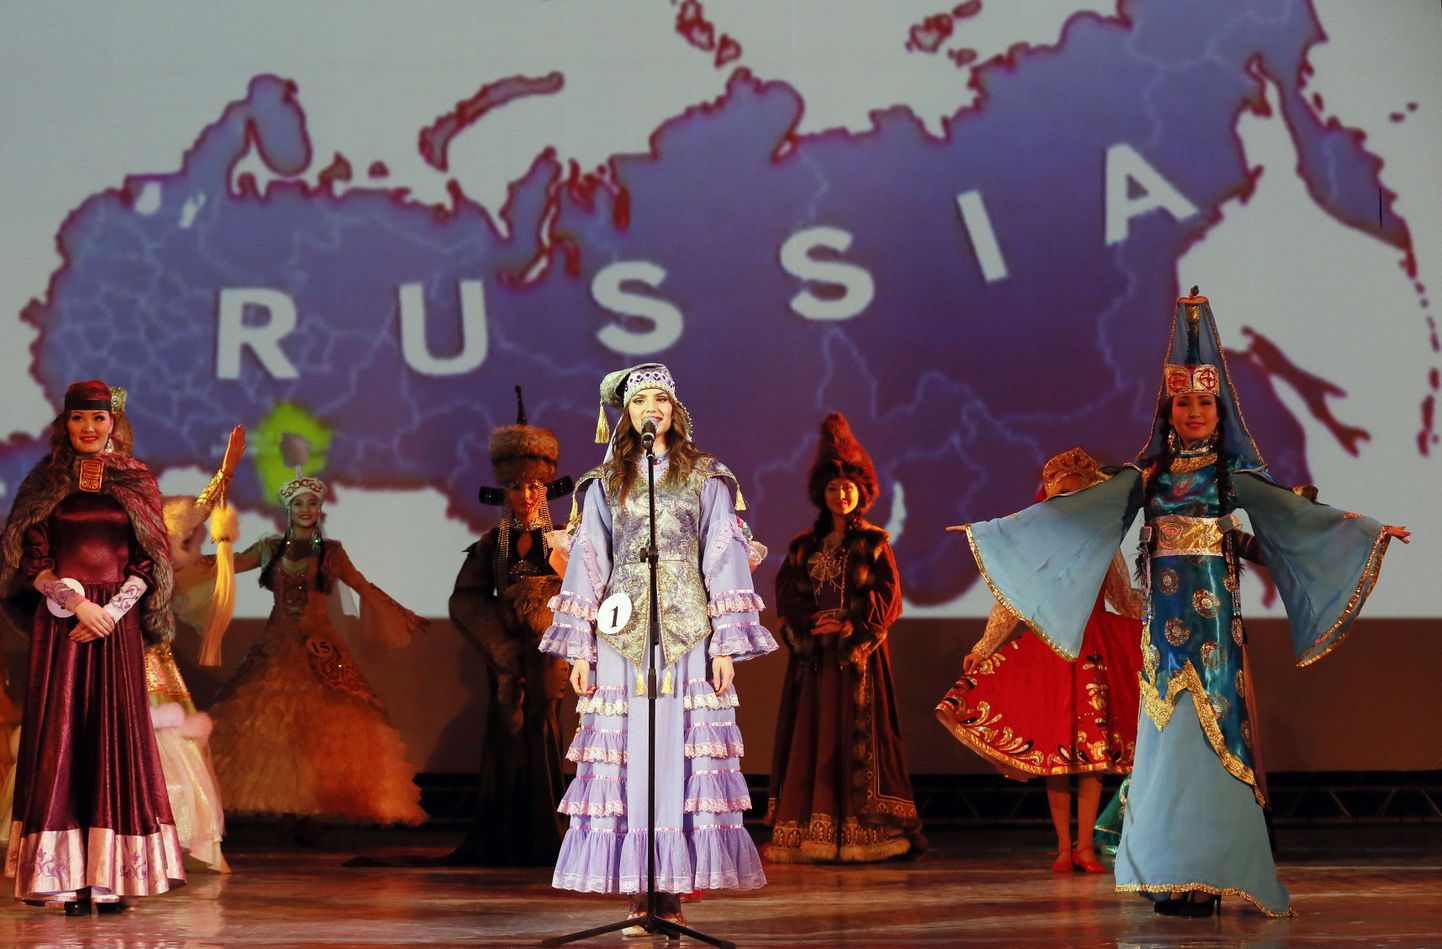 Väljaane: Kesk-Aasia riikides toimub venestamine. Fotol nende riikide taidlejad esinemas, taga Venemaad kujutav kaart